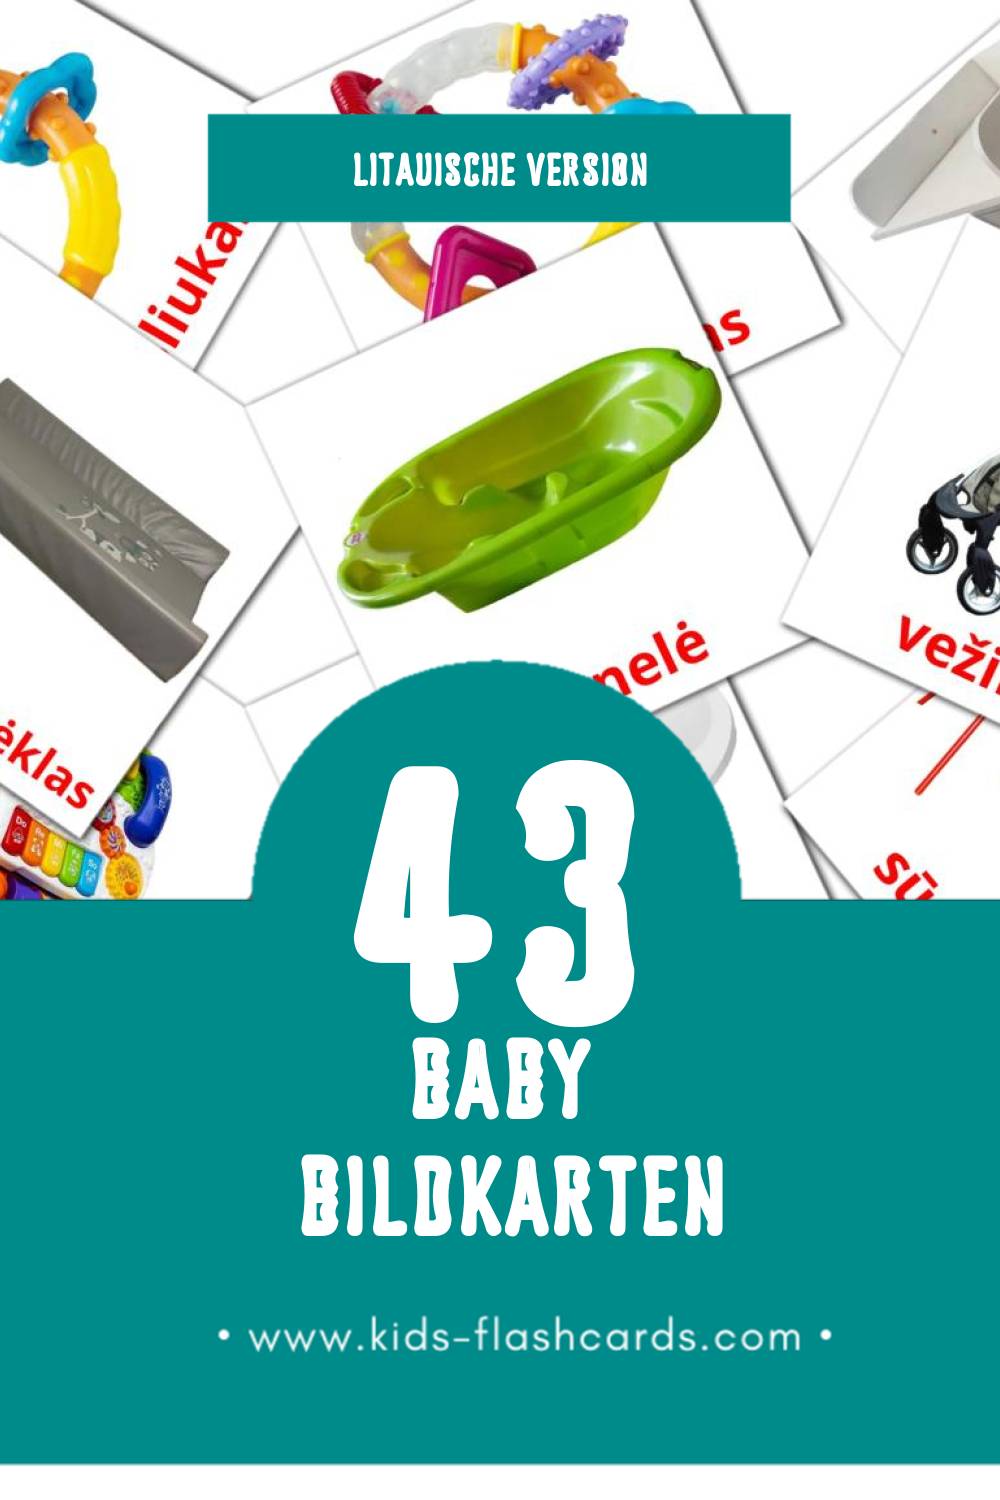 Visual Kūdikis Flashcards für Kleinkinder (45 Karten in Litauisch)